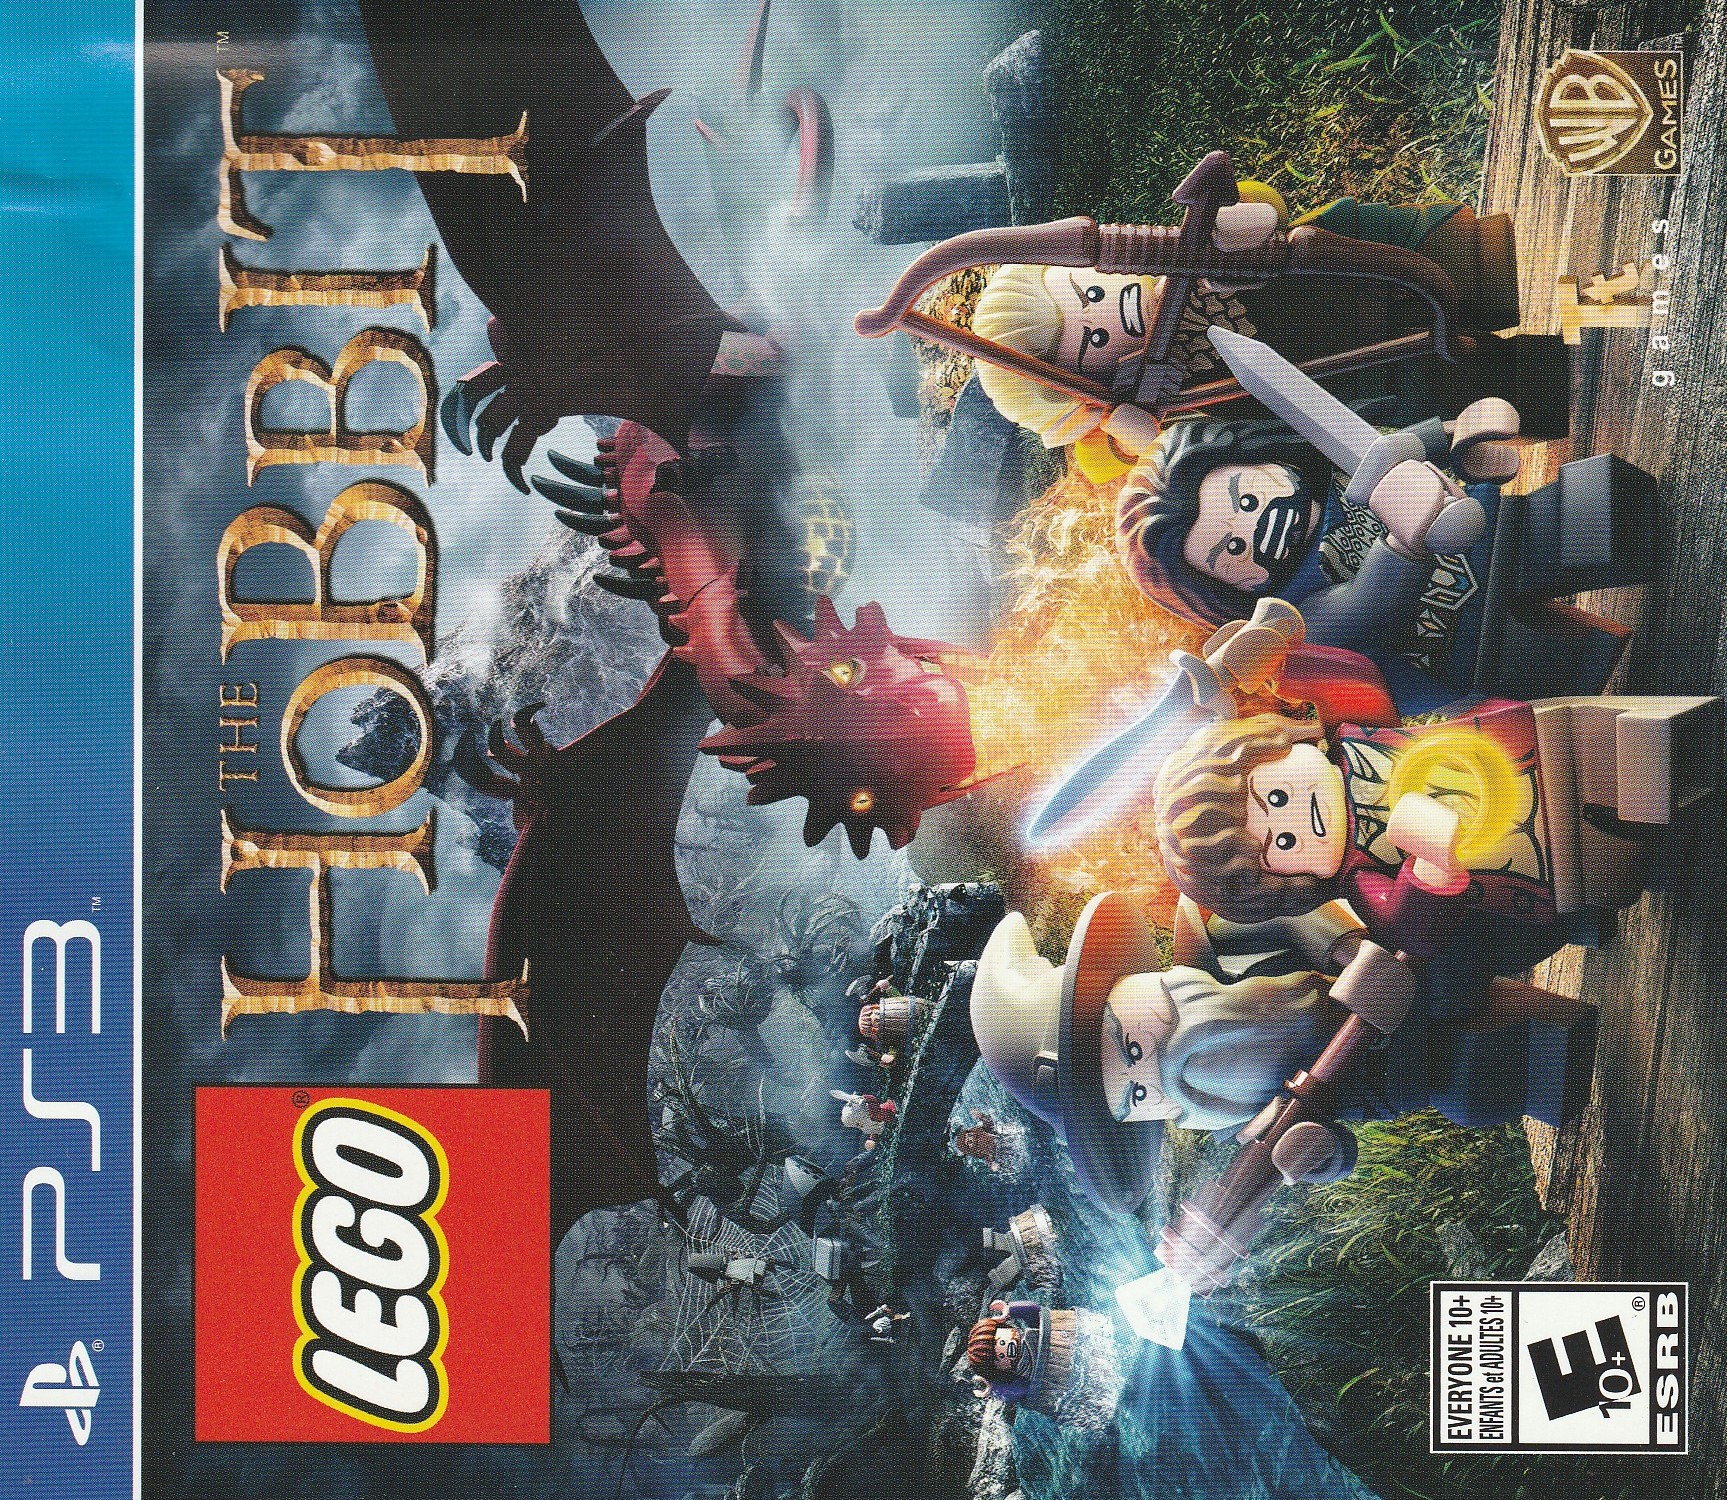 'Lego: The Hobbit'